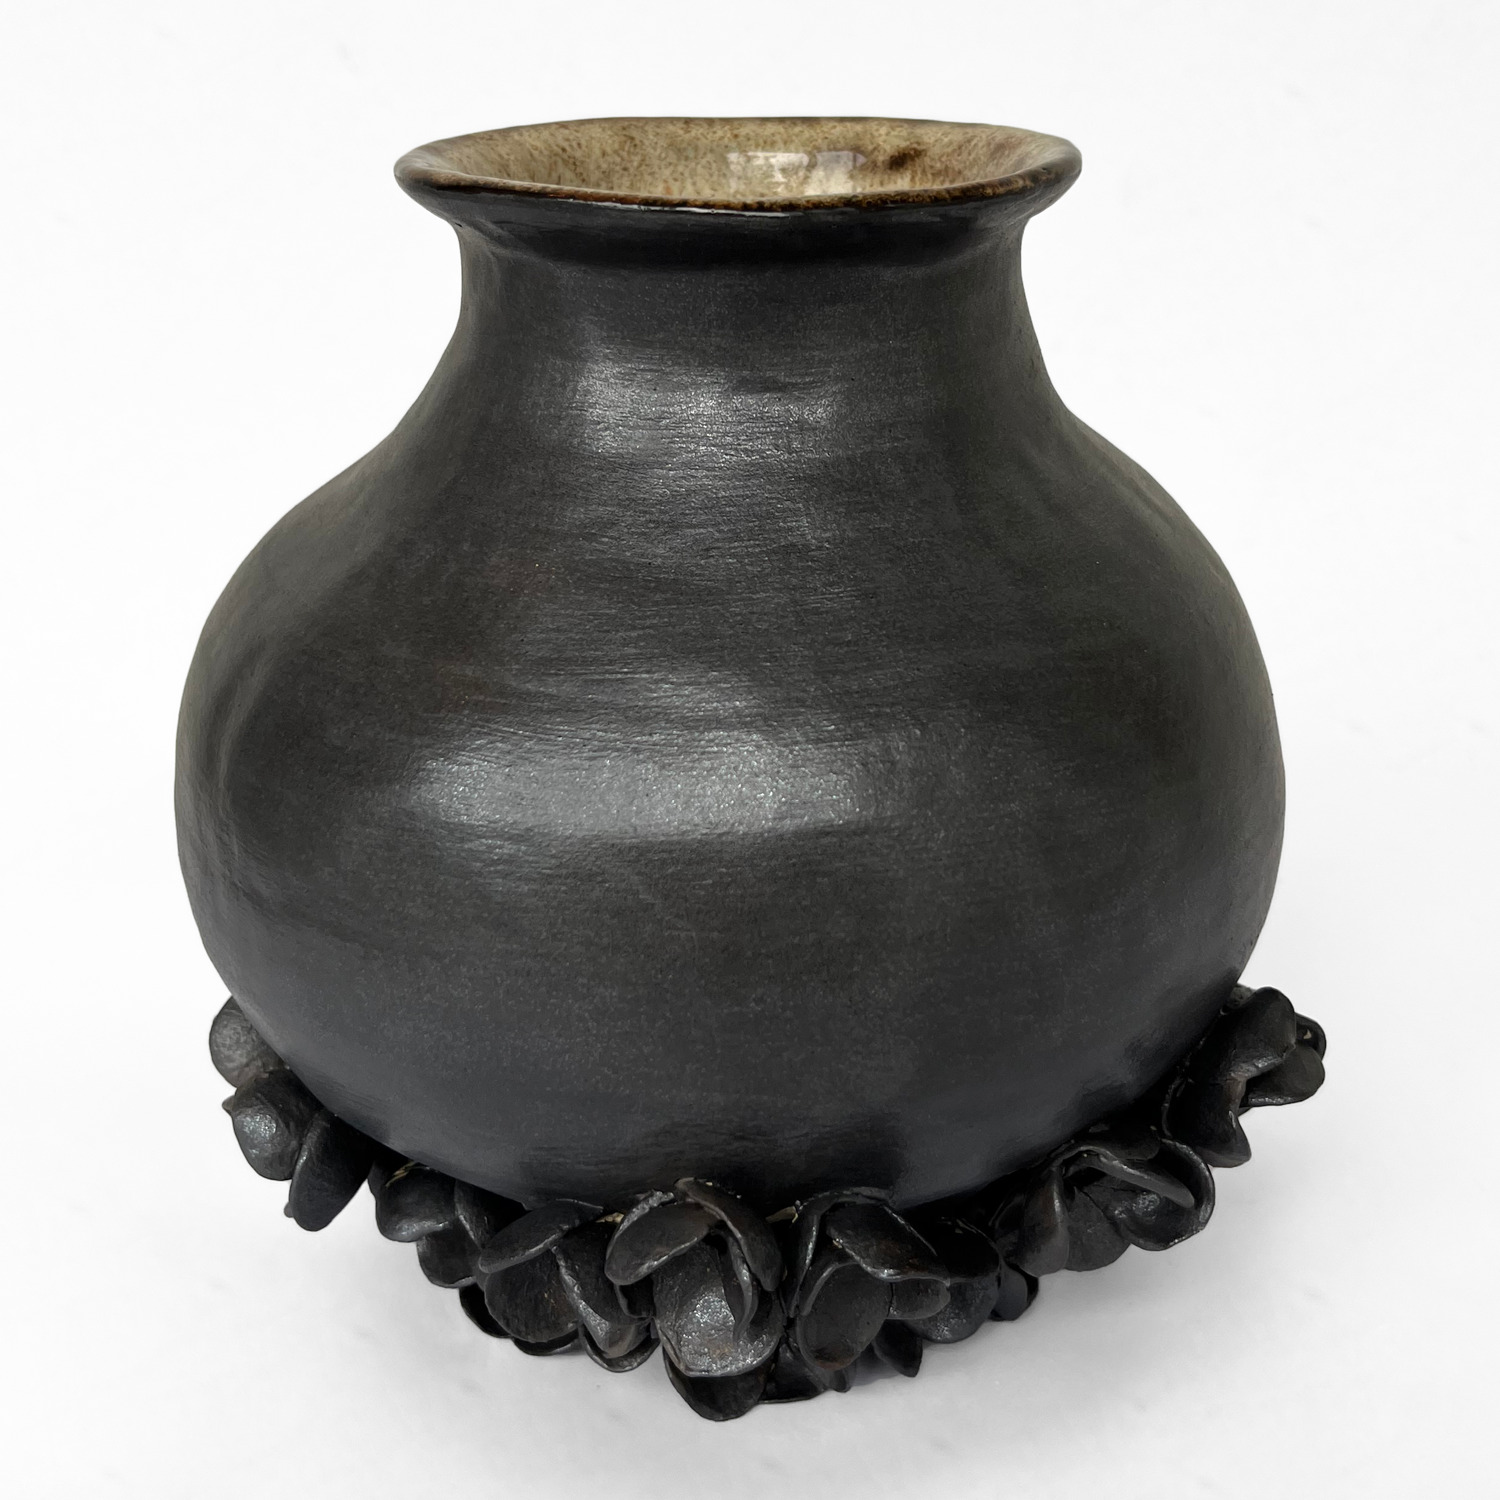 Mariana Bolanos Inclan: Large Flower Vase Product Image 1 of 2